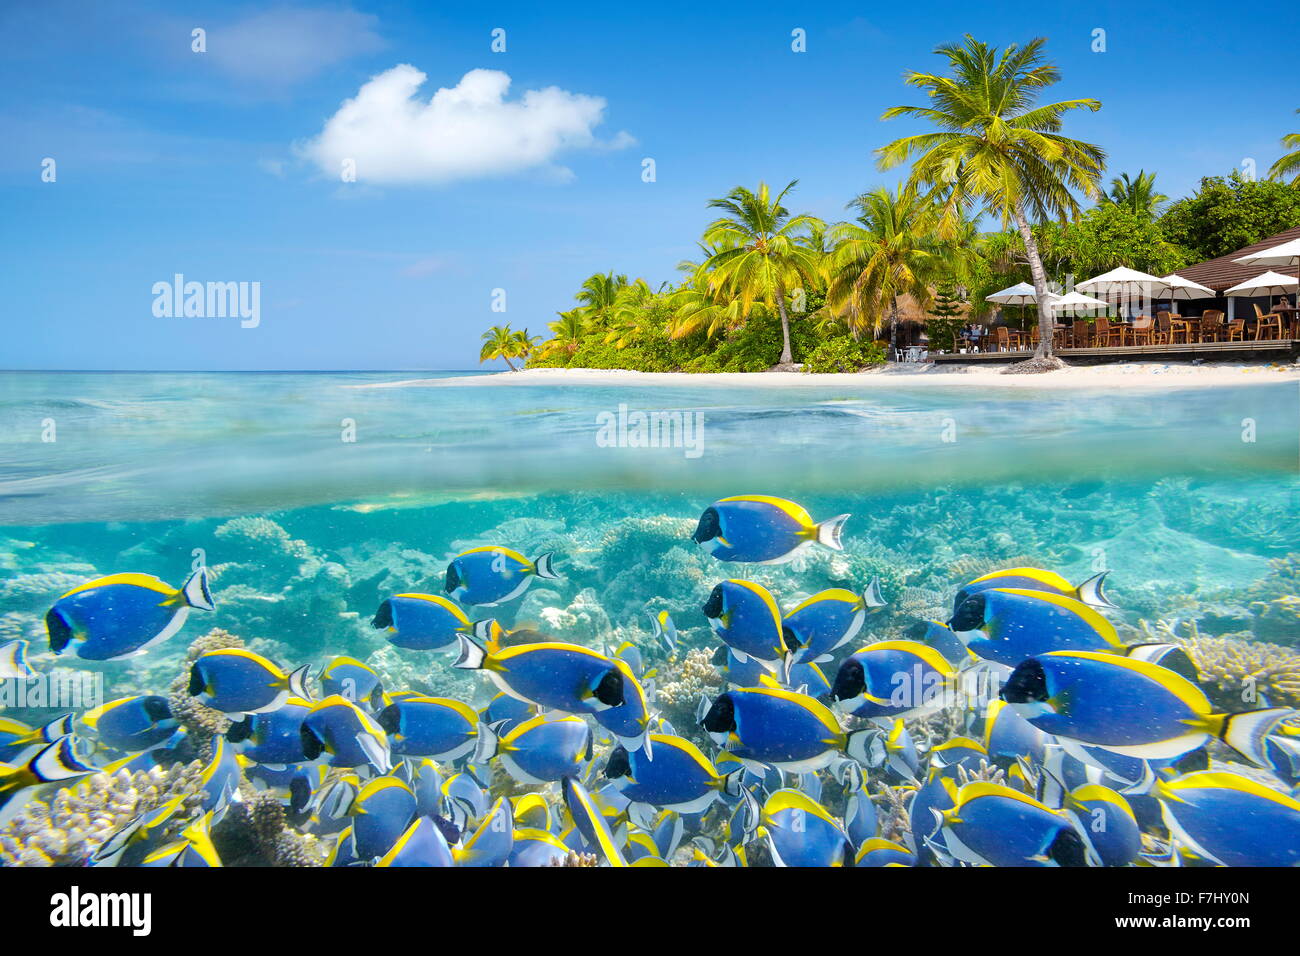 Isole Maldive - vista subacquea con banchi di pesci e reef Foto Stock